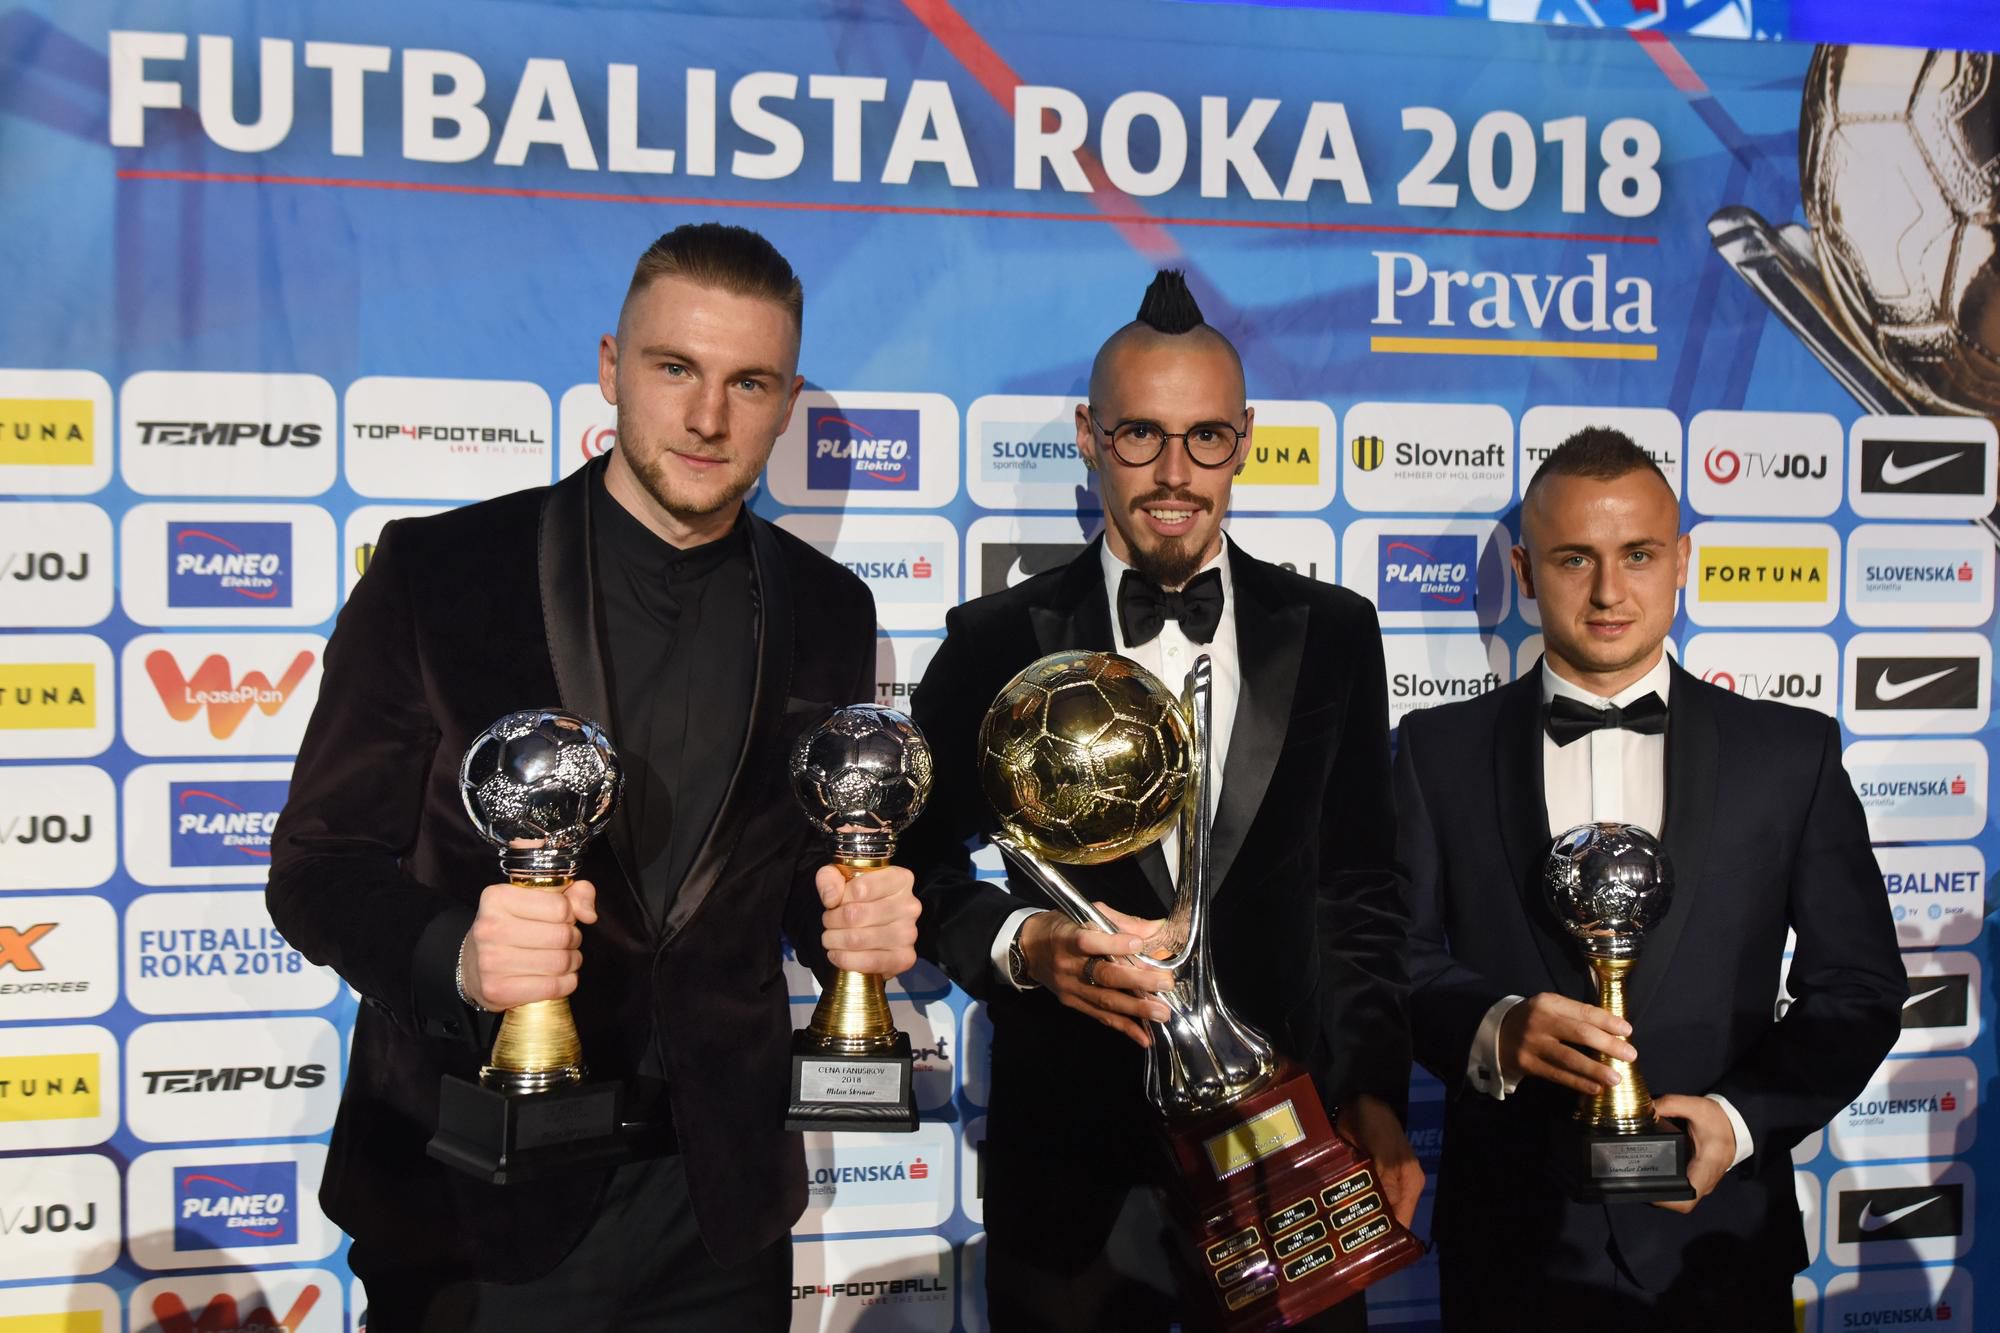 Slovenskí futbalisti Milan Škriniar (2. miesto), Marek Hamšík (1. miesto) a Stanislav Lobotka (3. miesto).